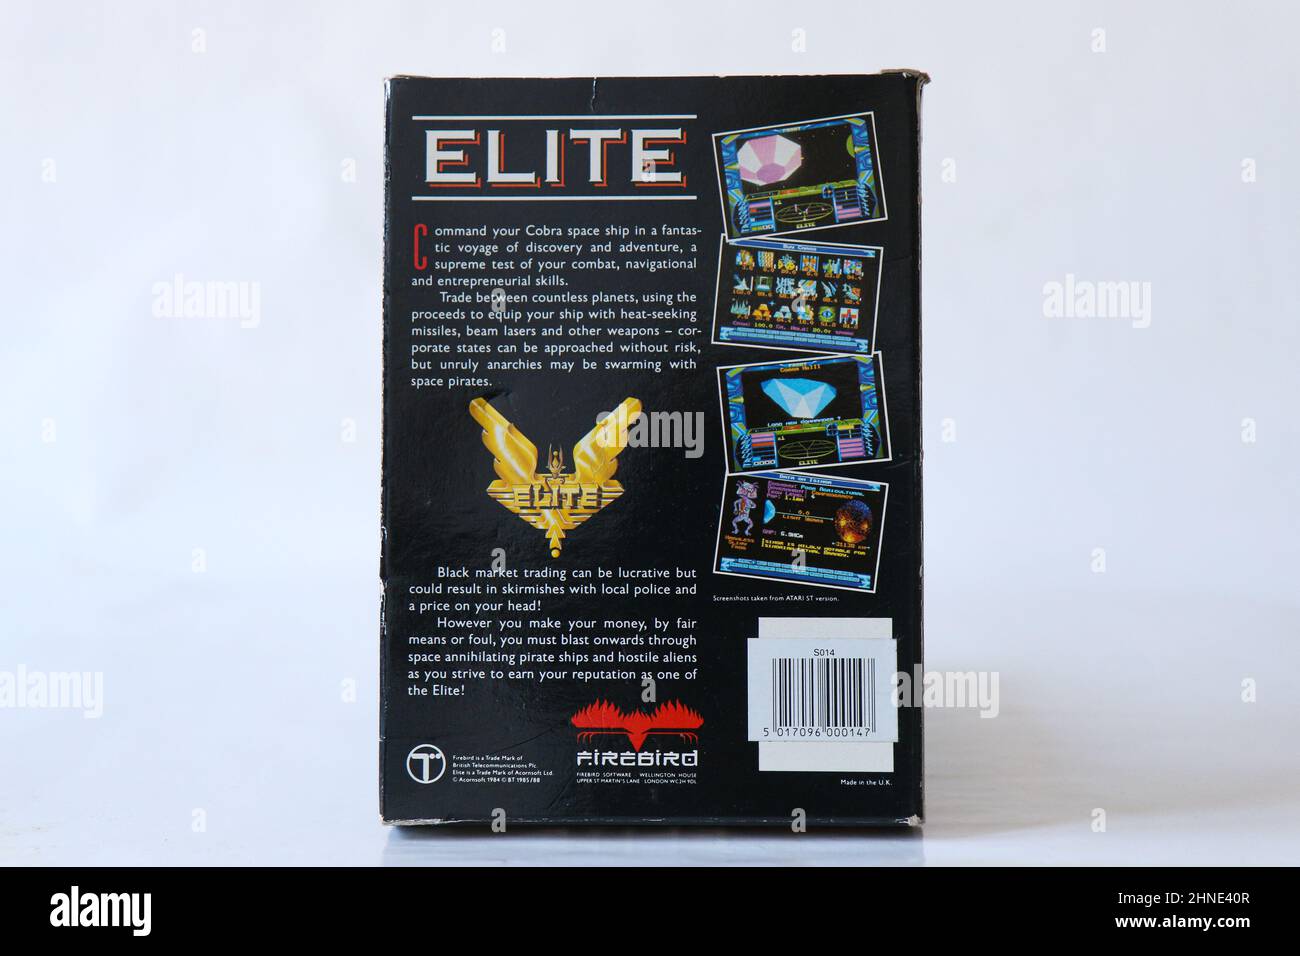 BERLIN - 12. FEBRUAR 2022: Vintage Retro Video Game ELITE für den Commodore Amiga auf Floppy Disks. Firebird veröffentlichte dieses Space Simulation Game im Jahr 19 Stockfoto